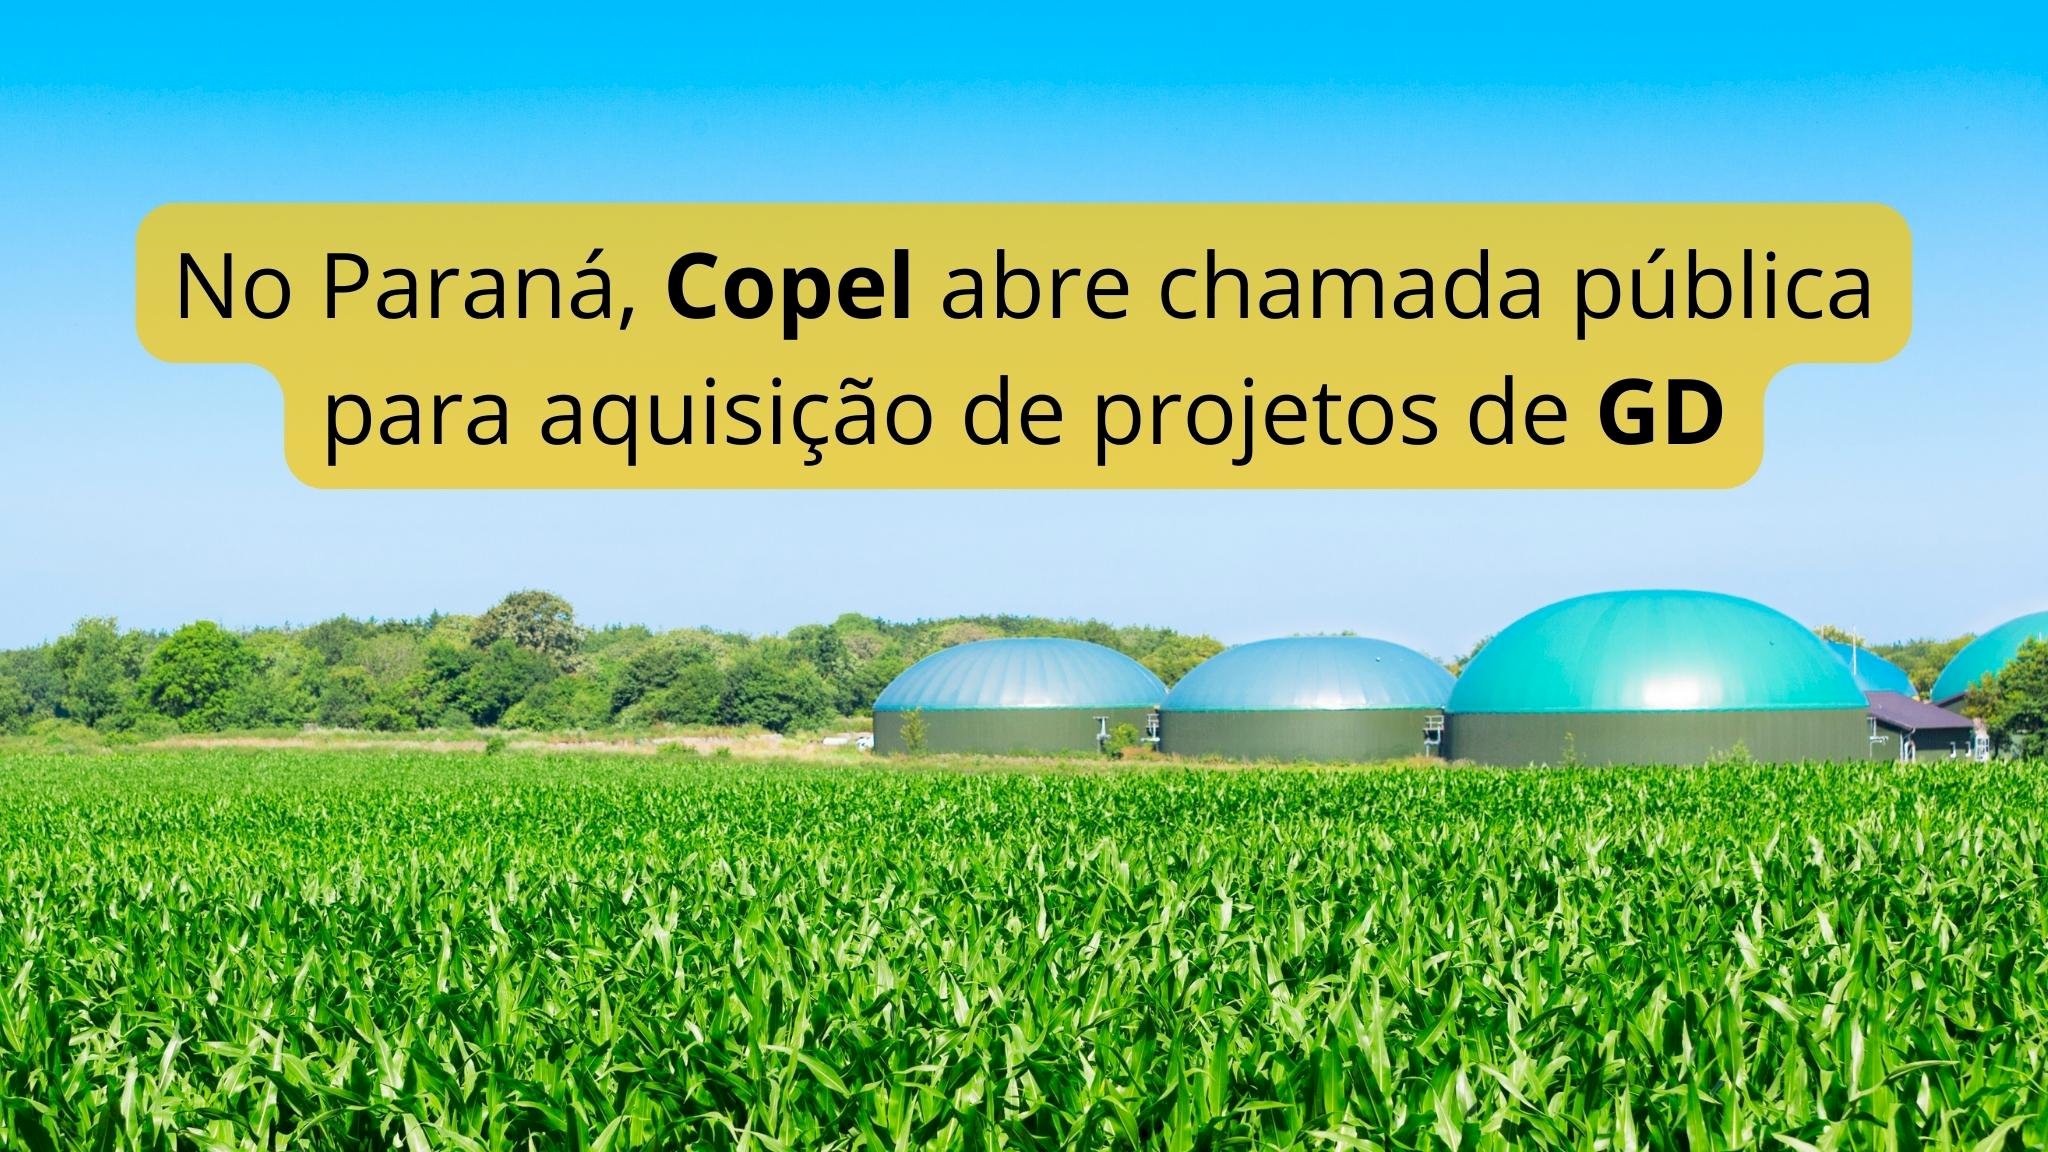 Copel abre chamada pública para aquisição de projetos de GD